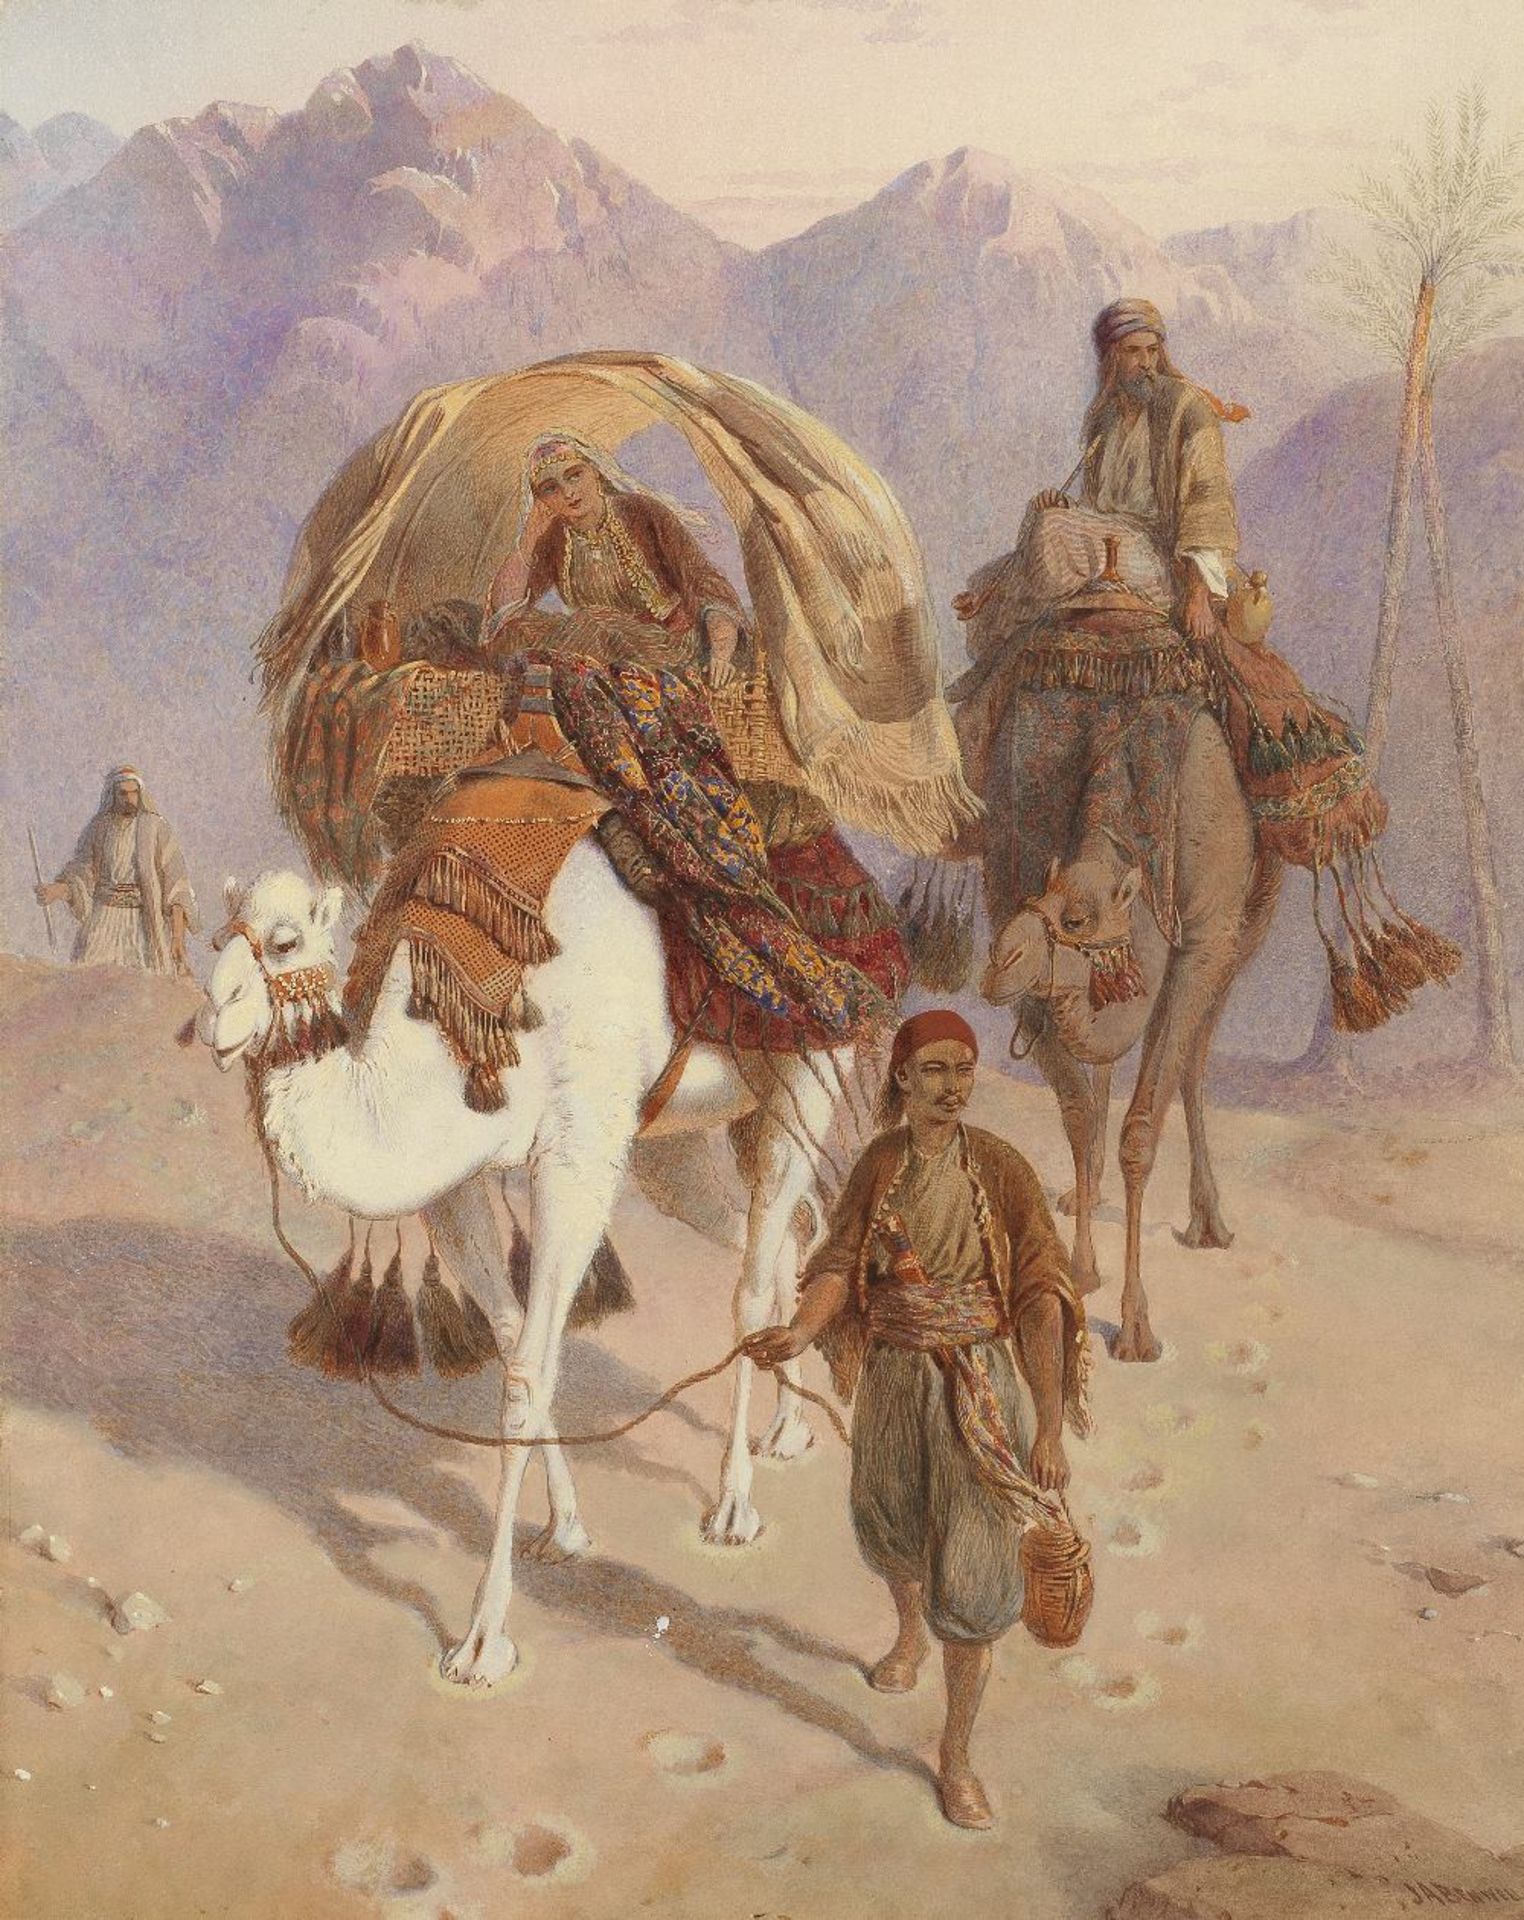 Joseph Austin Benwell (British, 1816-1886) Sunset in the Valley of Sinai